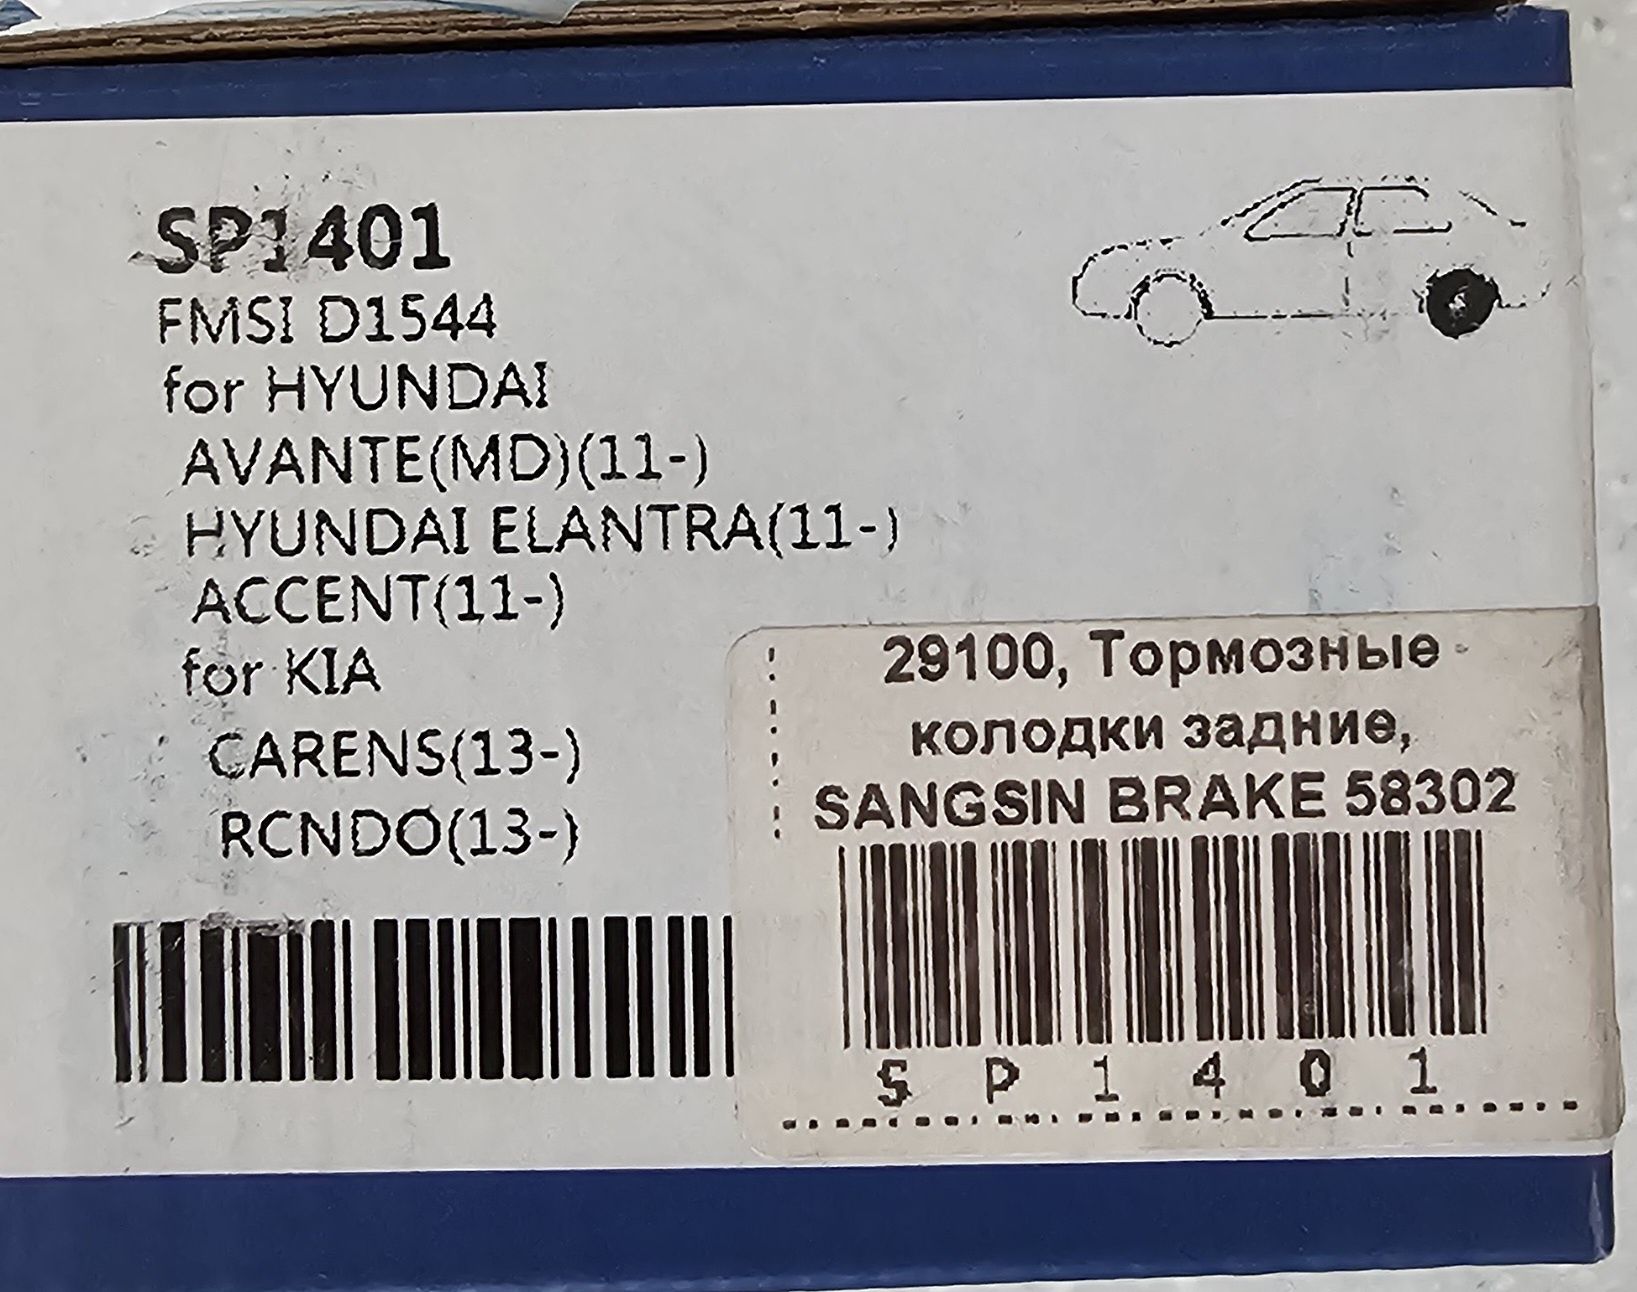 Тормозные колодки Hyundai задние (1 упаковка)